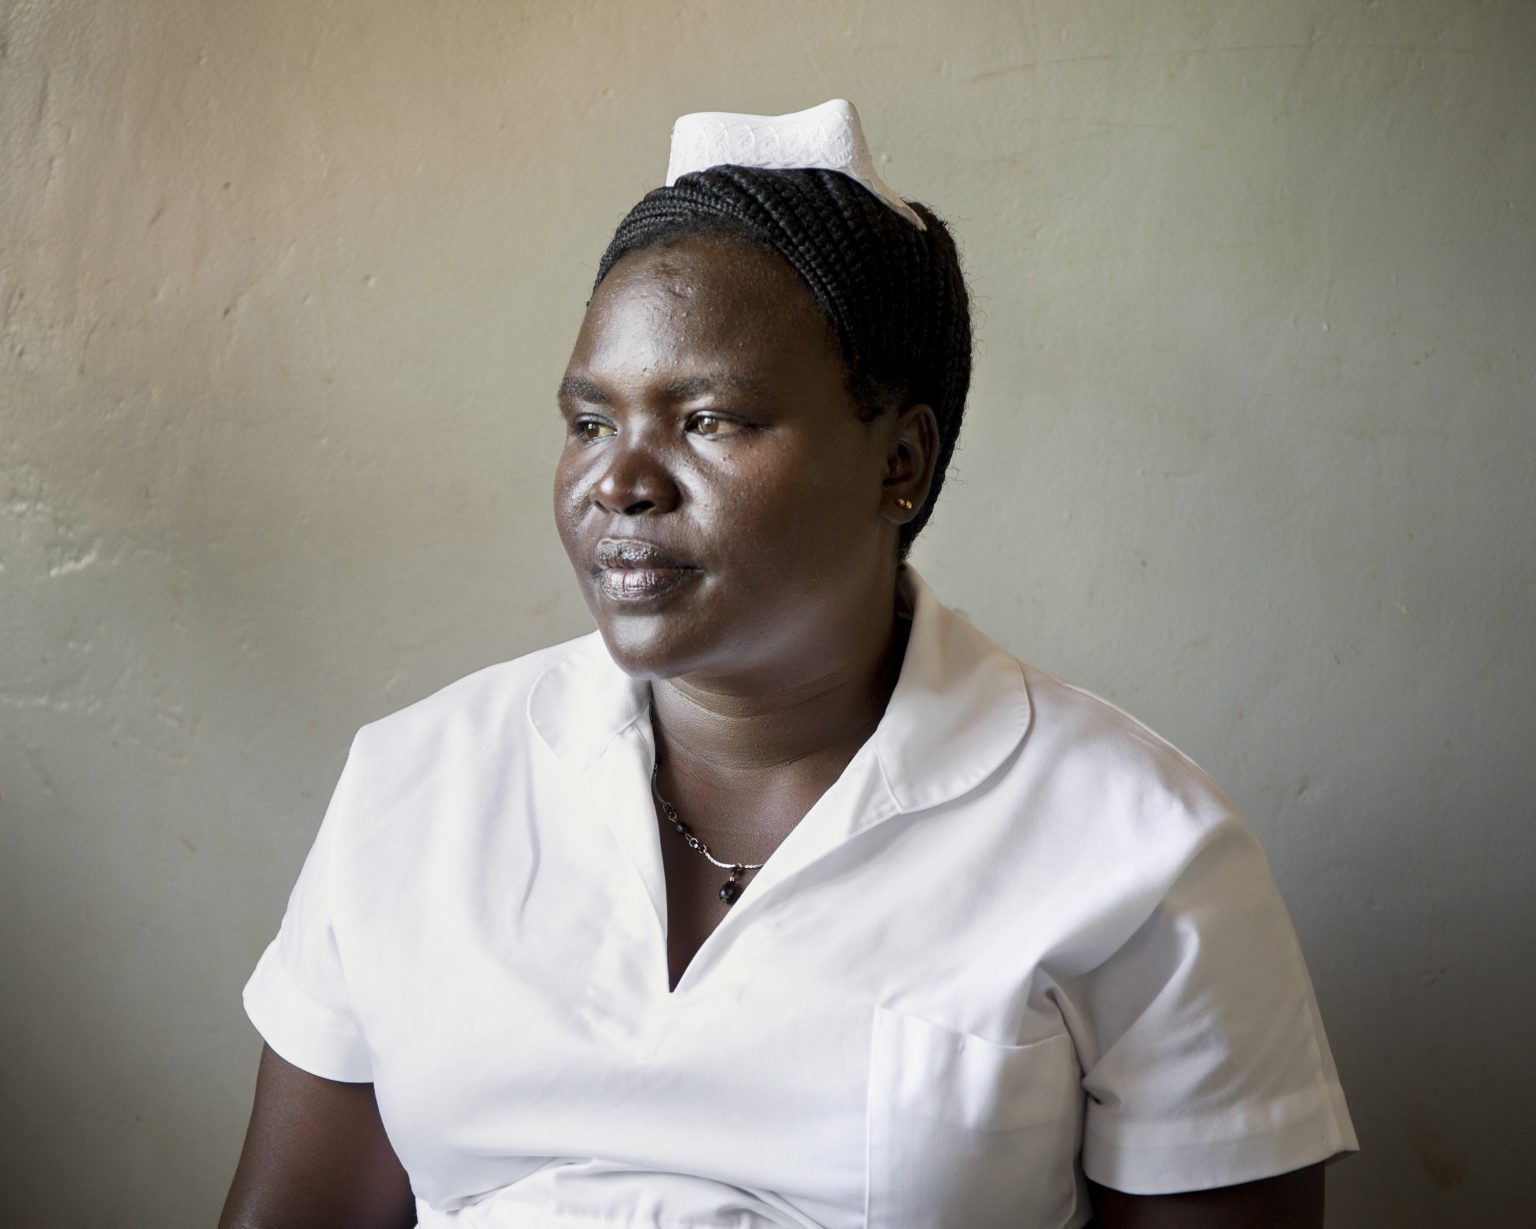 Karamoja region (Uganda). In Lorengechora health center, Betty Agan, 38, works as chief-midwife. Thanks to her innovative methods and her great respect for the local traditions, she has been persuading more and more mothers to give birth with her, in safe conditions, and no longer in their huts. She’s been awarded by the Ugandan Ministry of Health as the best midwife in Karamoja.
><
Regione della Karamoja (Uganda). Nel centro sanitario di Lorengechora, Betty Agan, 38 anni, lavora come capo ostetrica. Grazie ai suoi metodi innovativi e al grande rispetto per le tradizioni locali, ha persuaso sempre più madri a partorire con lei, in condizioni di sicurezza, e non più nelle loro capanne. È stata premiata dal ministero della Salute ugandese come la migliore ostetrica della Karamoja.